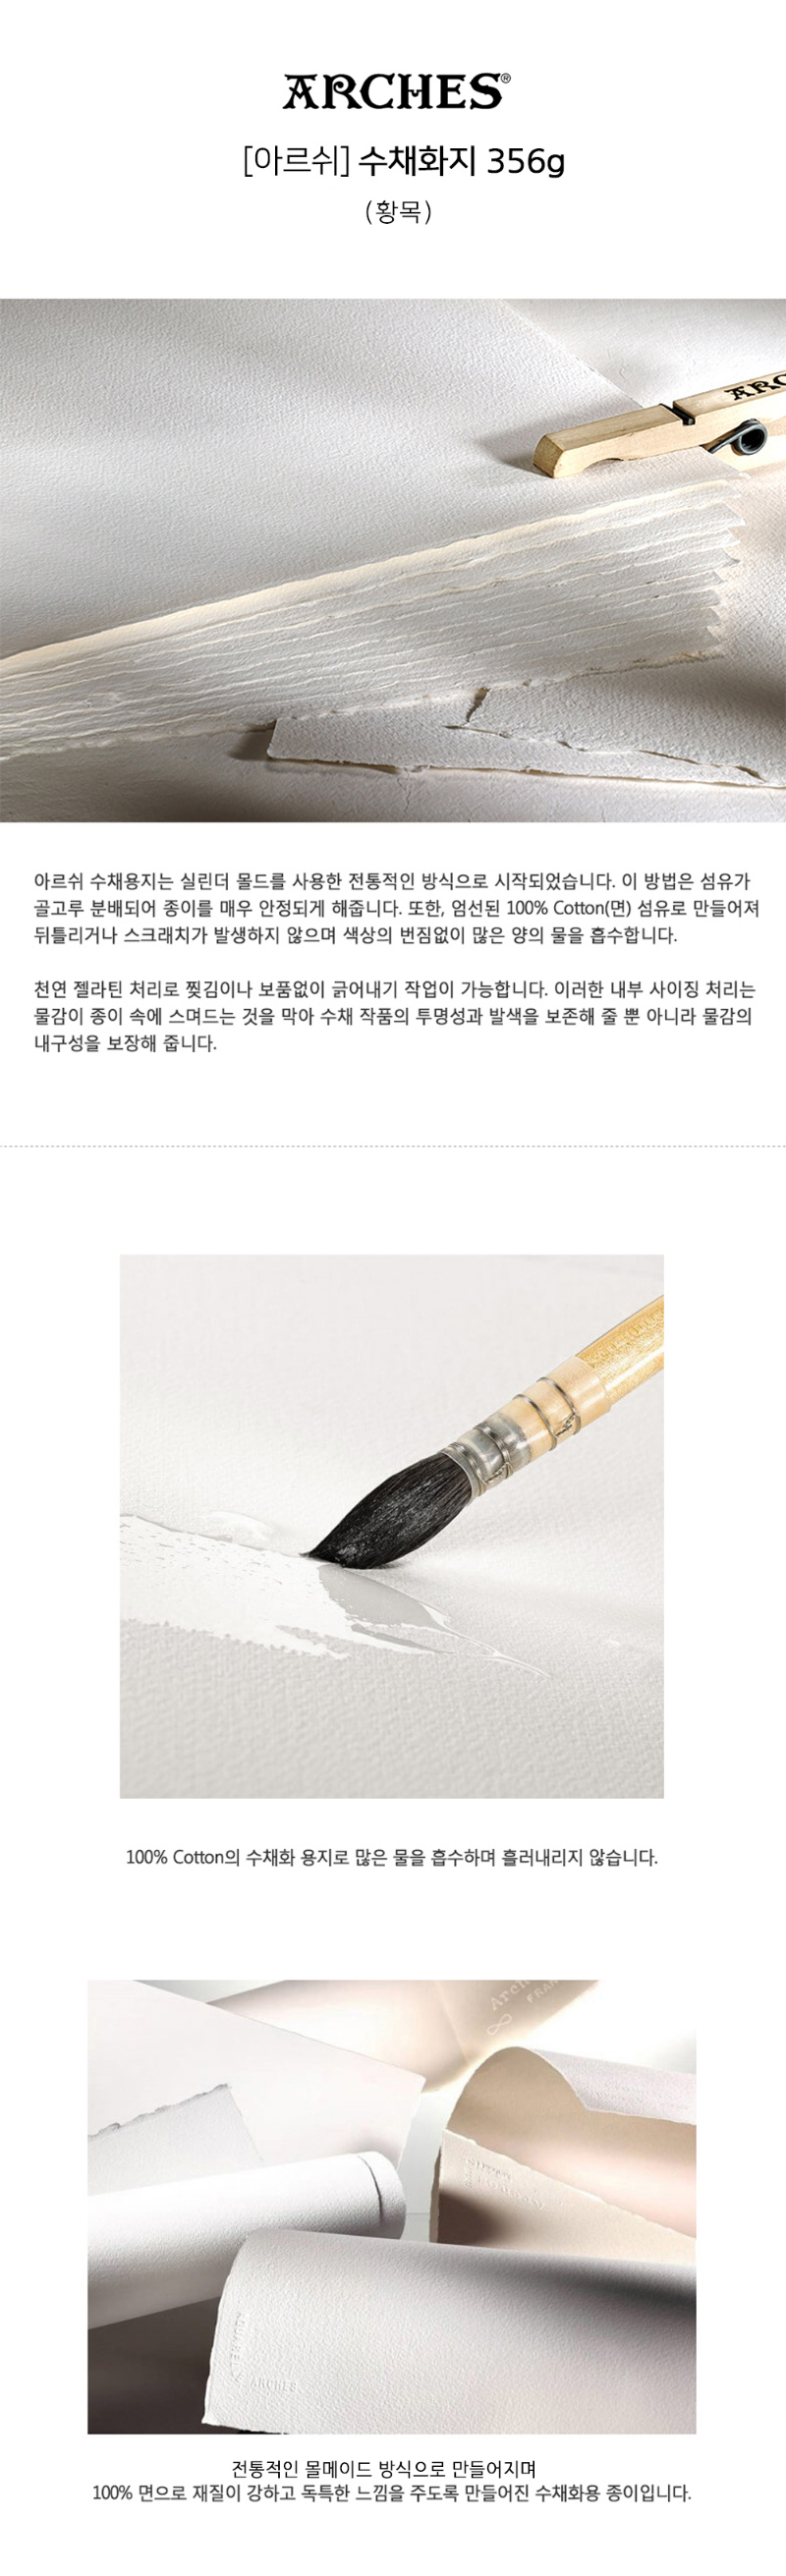 정식왁구 캔버스 광목천 + 아르쉬 배접 상세이미지 종이설명